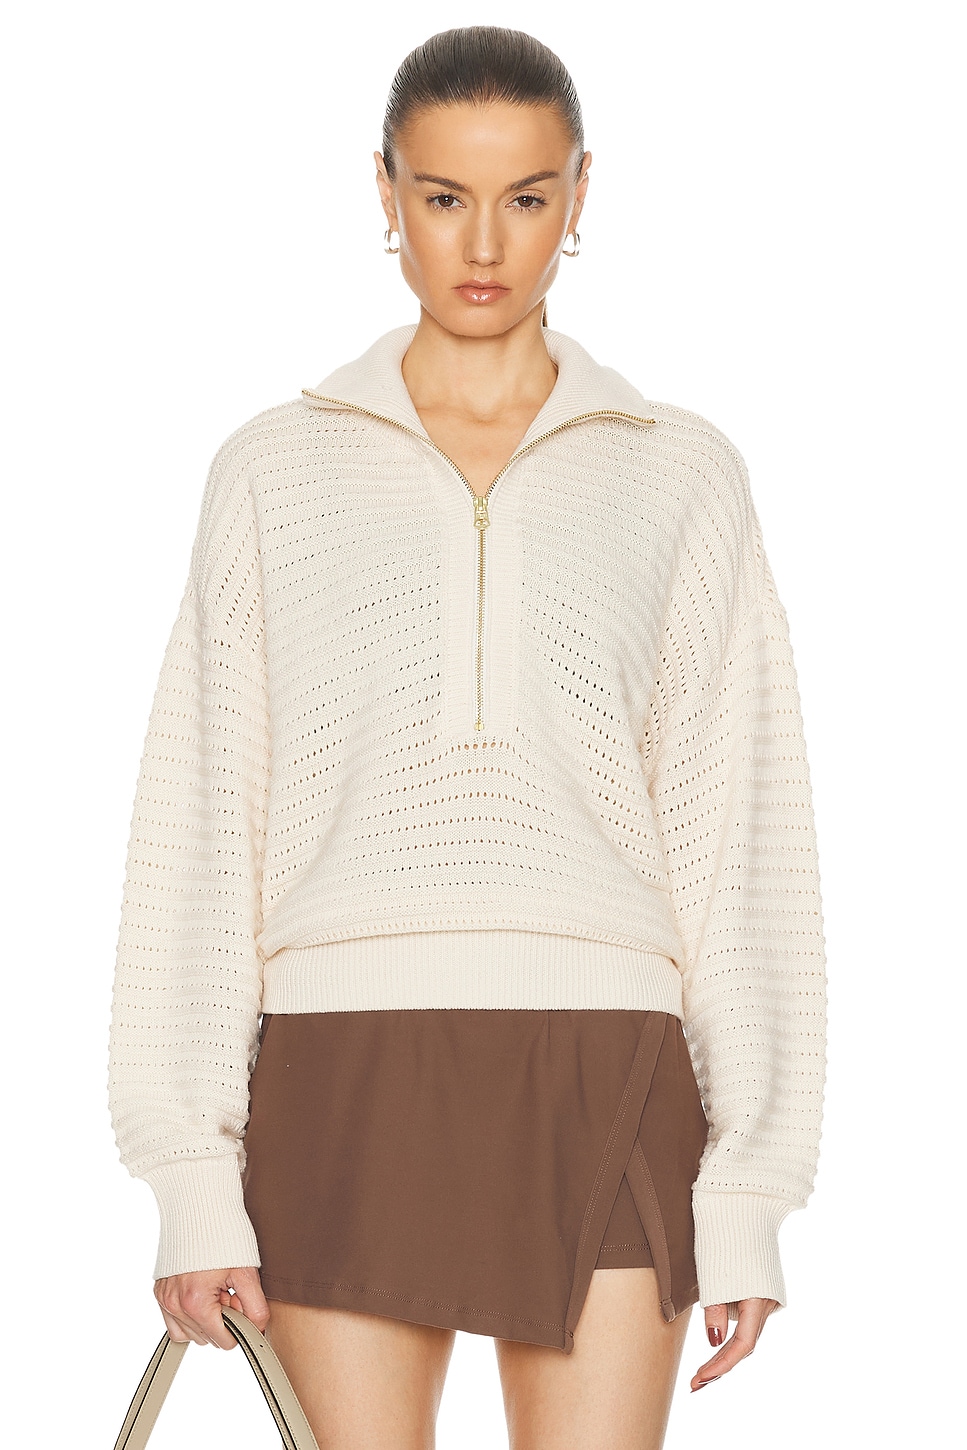 Image 1 of Varley Tara Half Zip Knit Sweater in Whitecap Grey